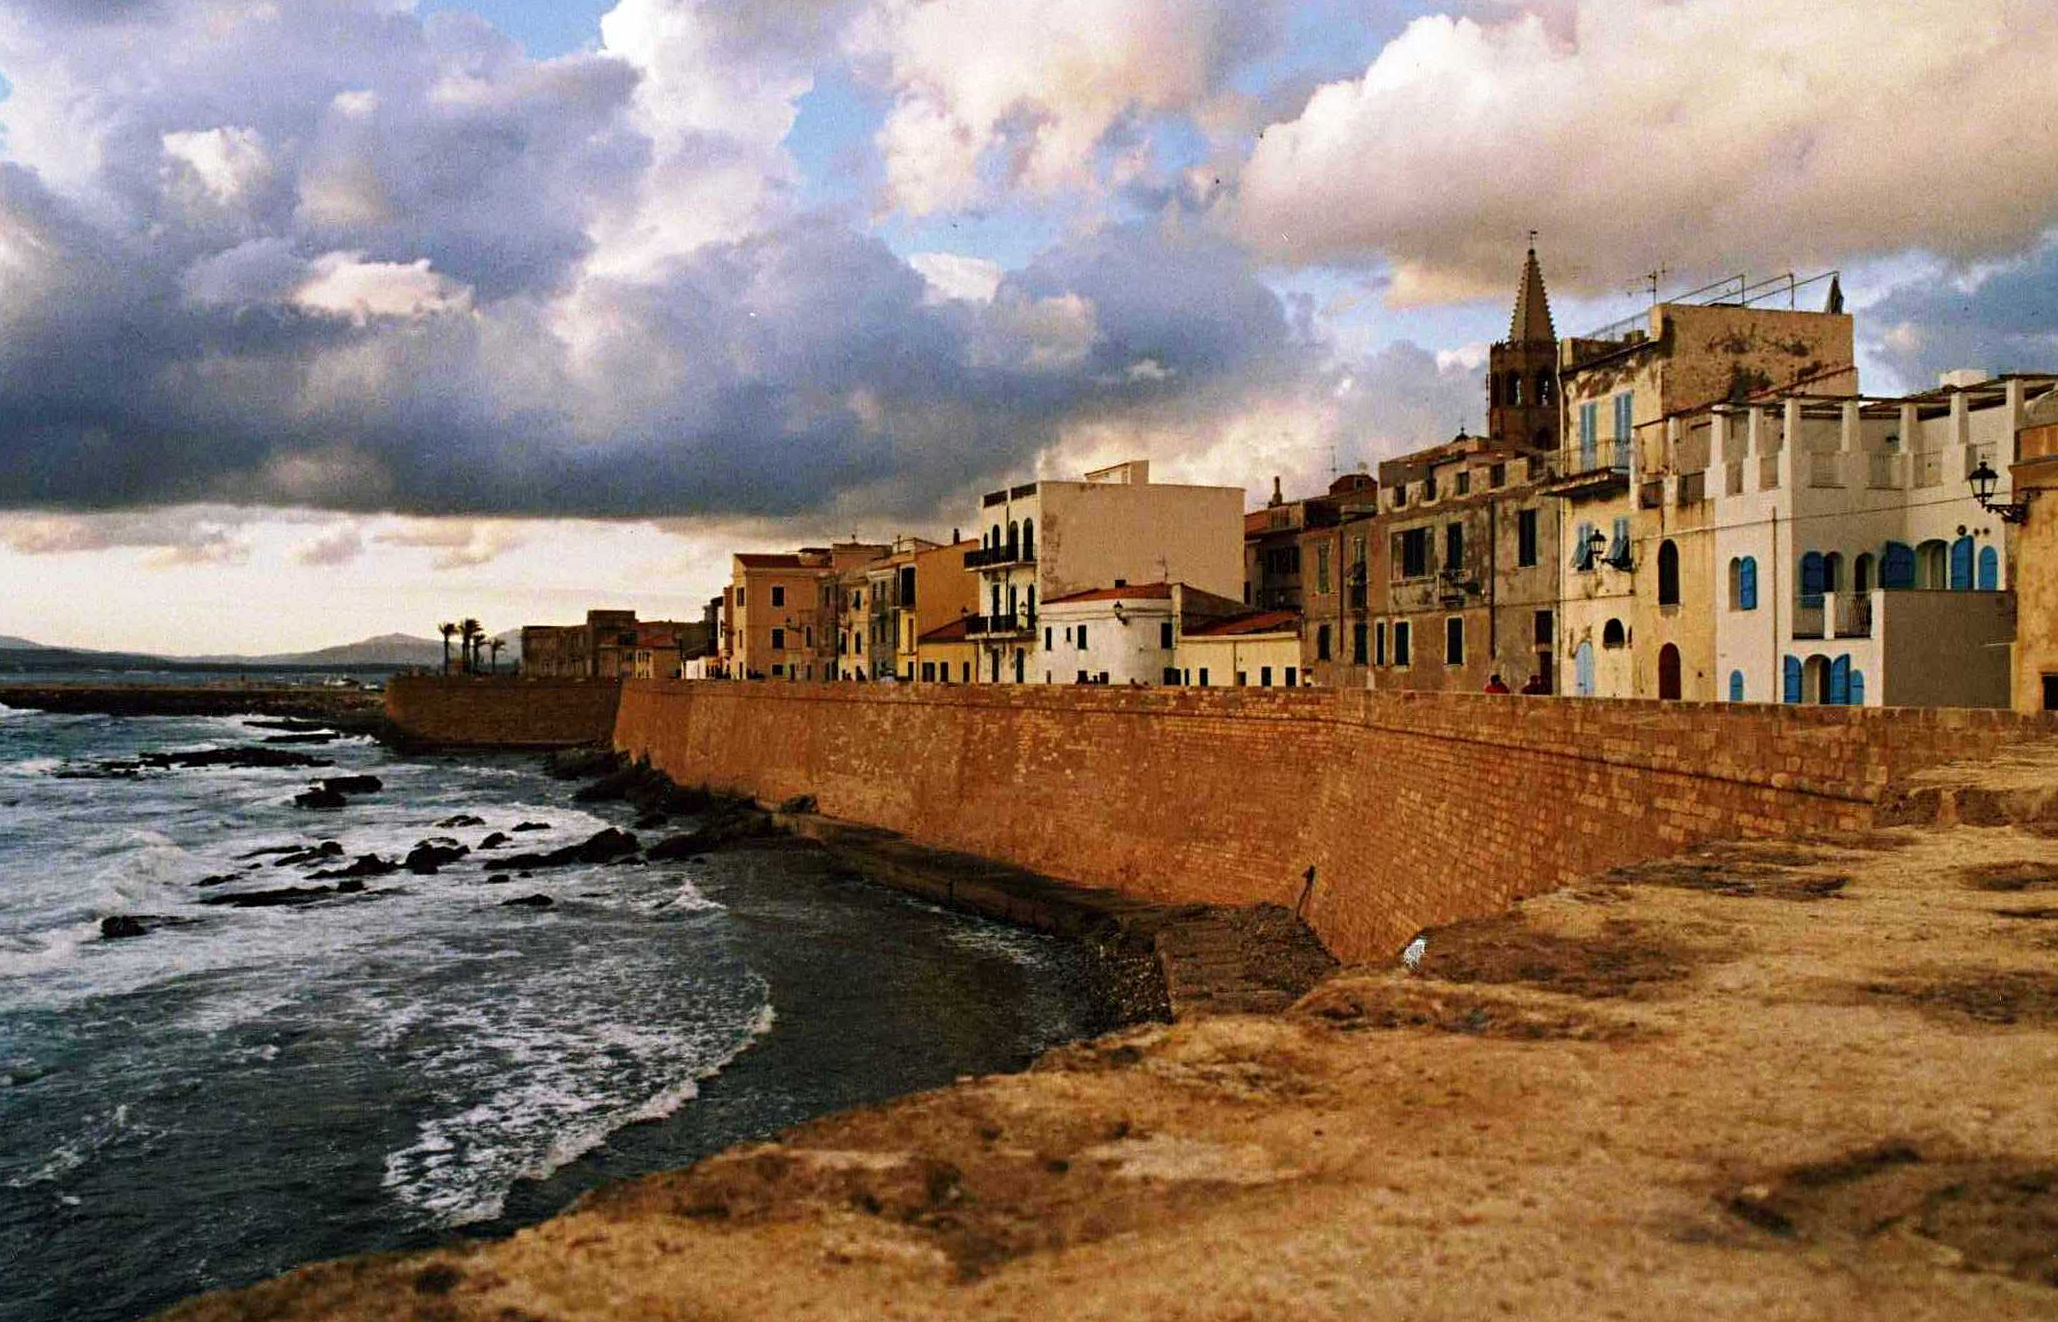 Alghero na Sardinii, zdroj: Wikipedie.org